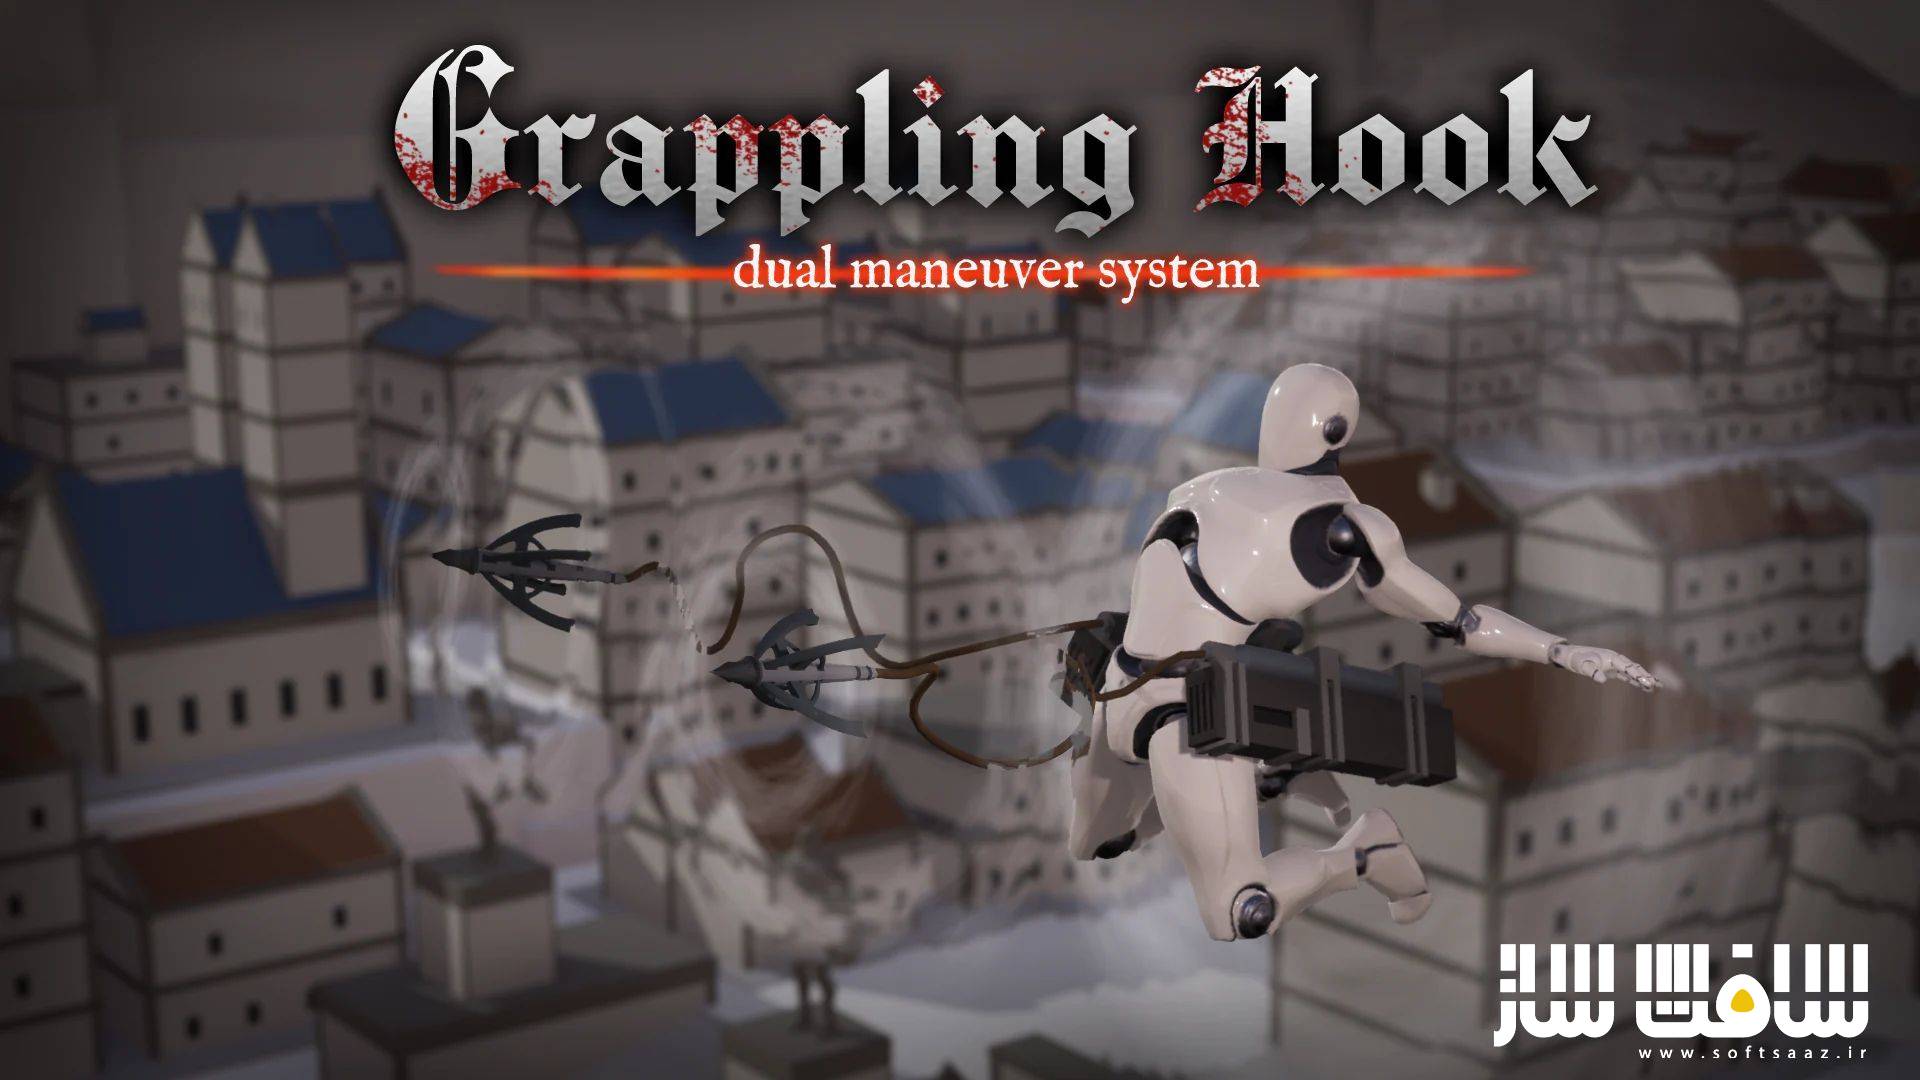 دانلود پروژه Grappling Hook برای آنریل انجین